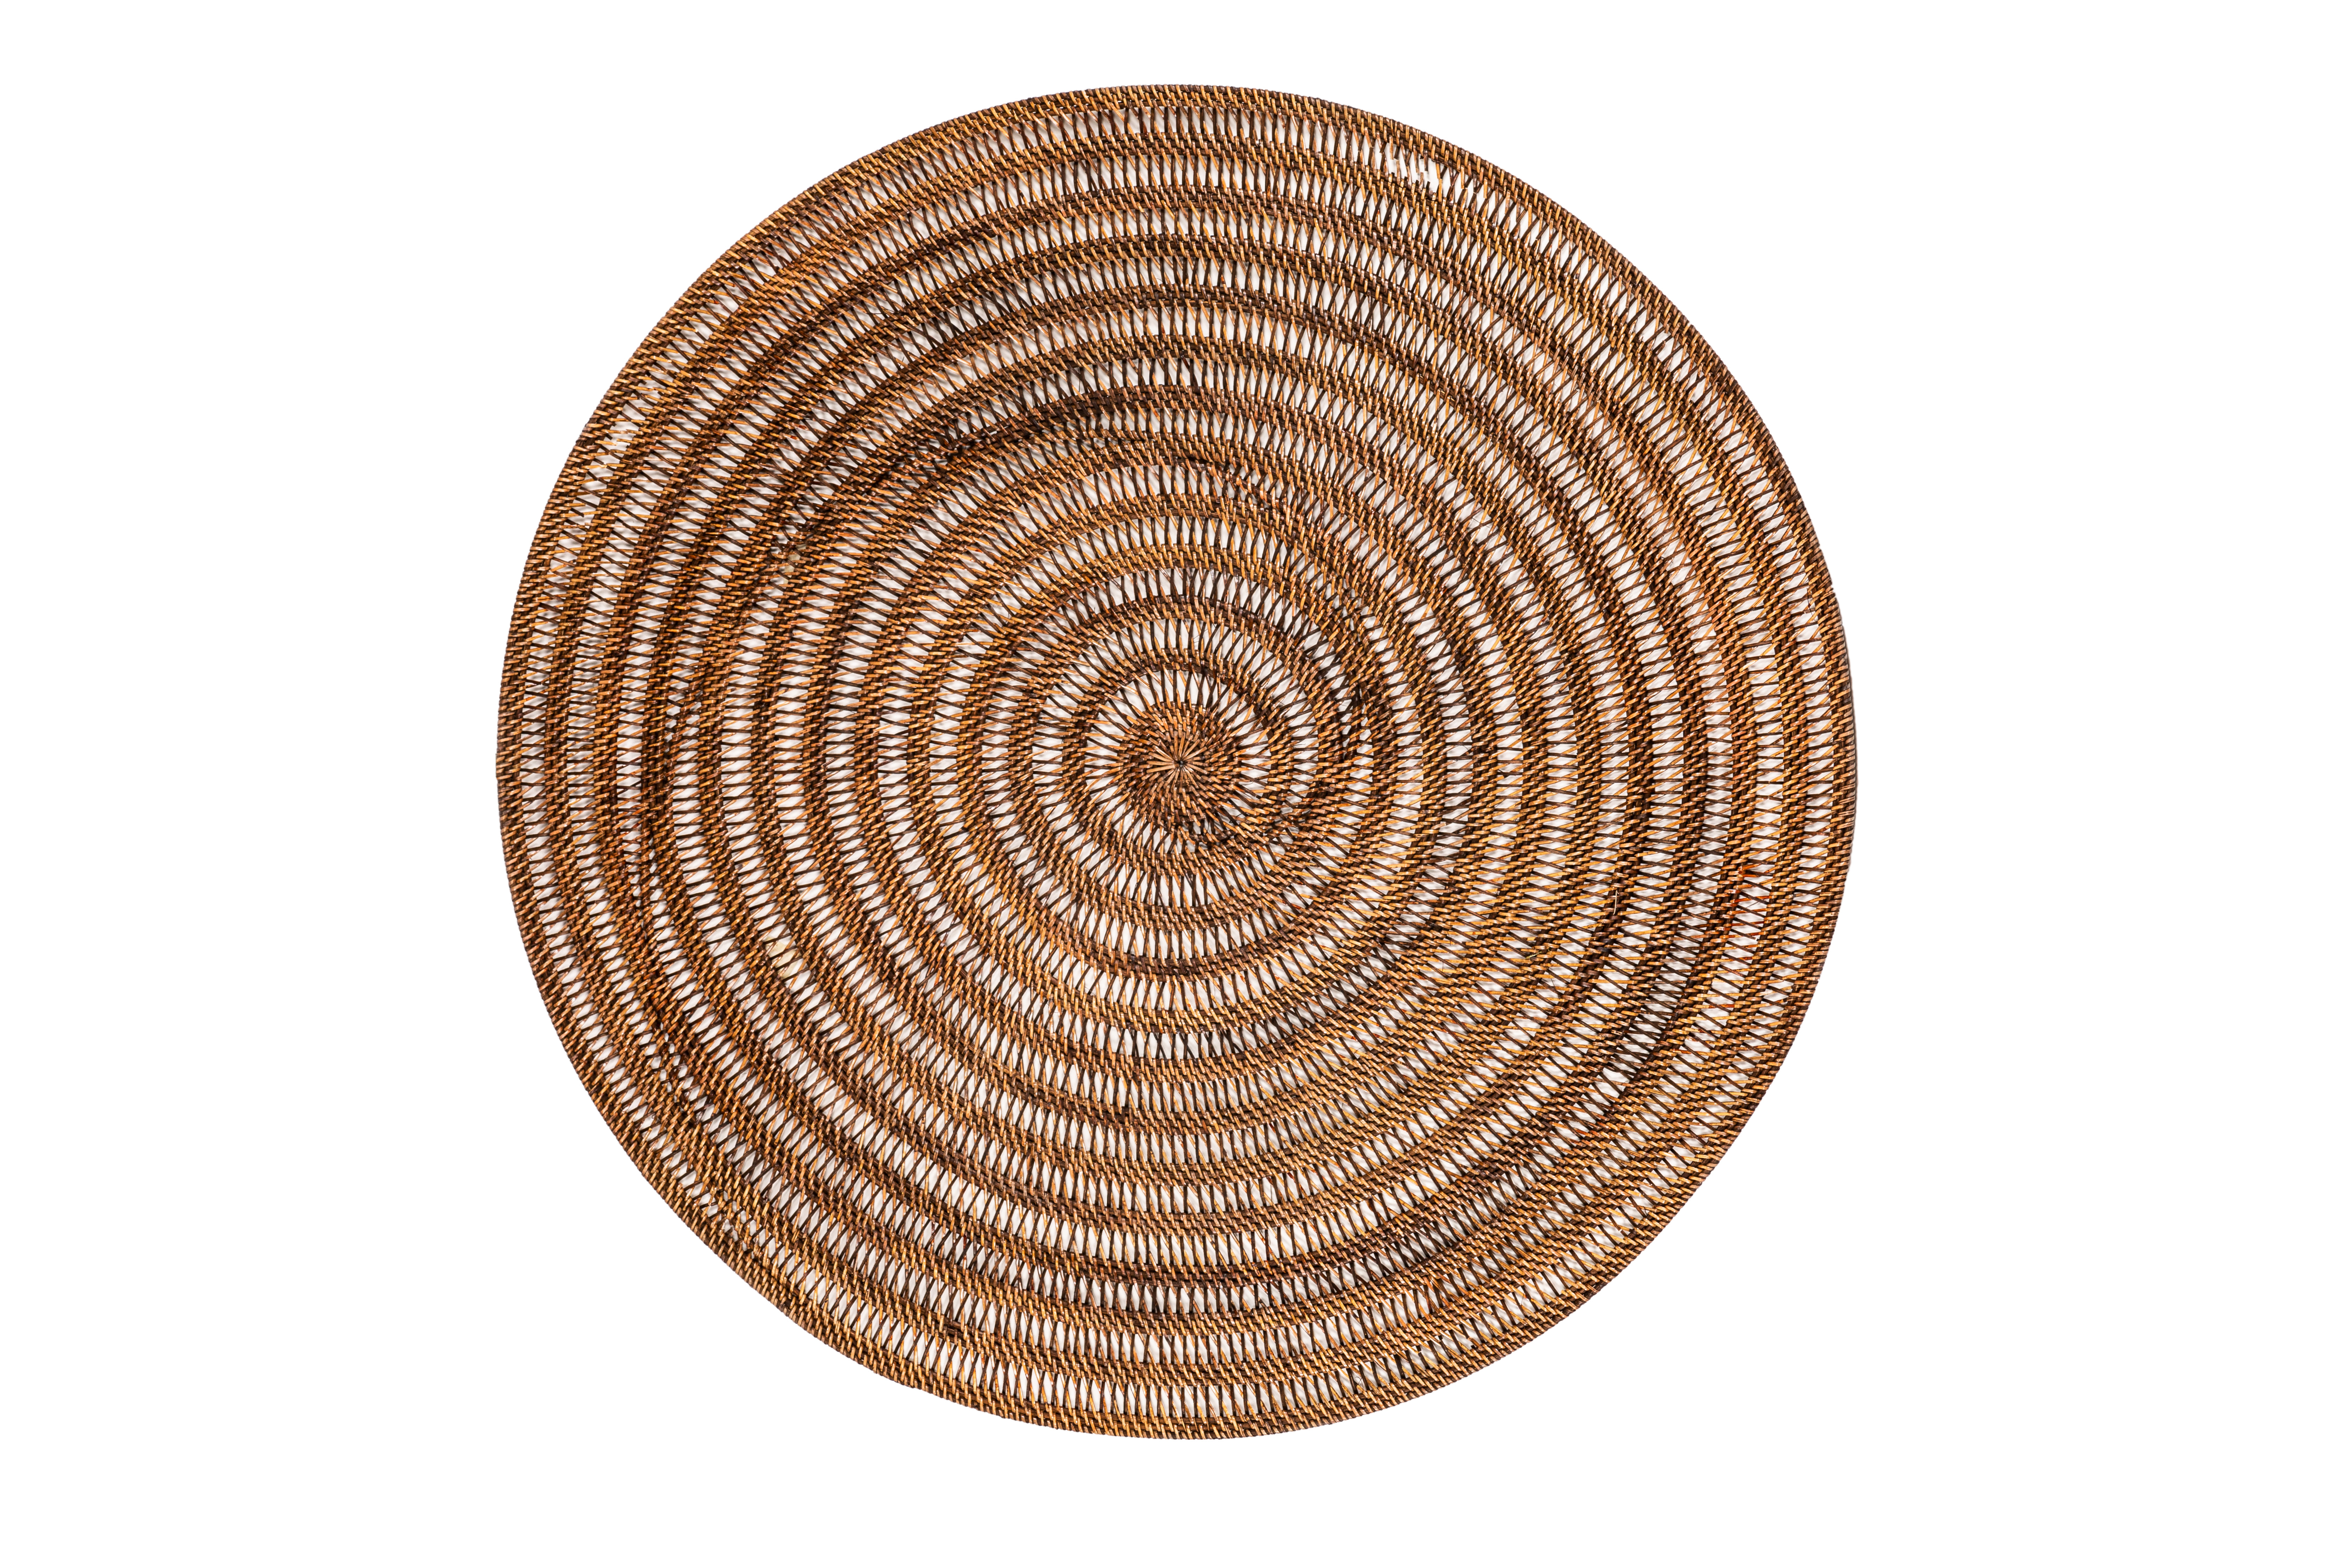 Decoration rattan, round - dia 100 cm - SPIRAL, dark brown 